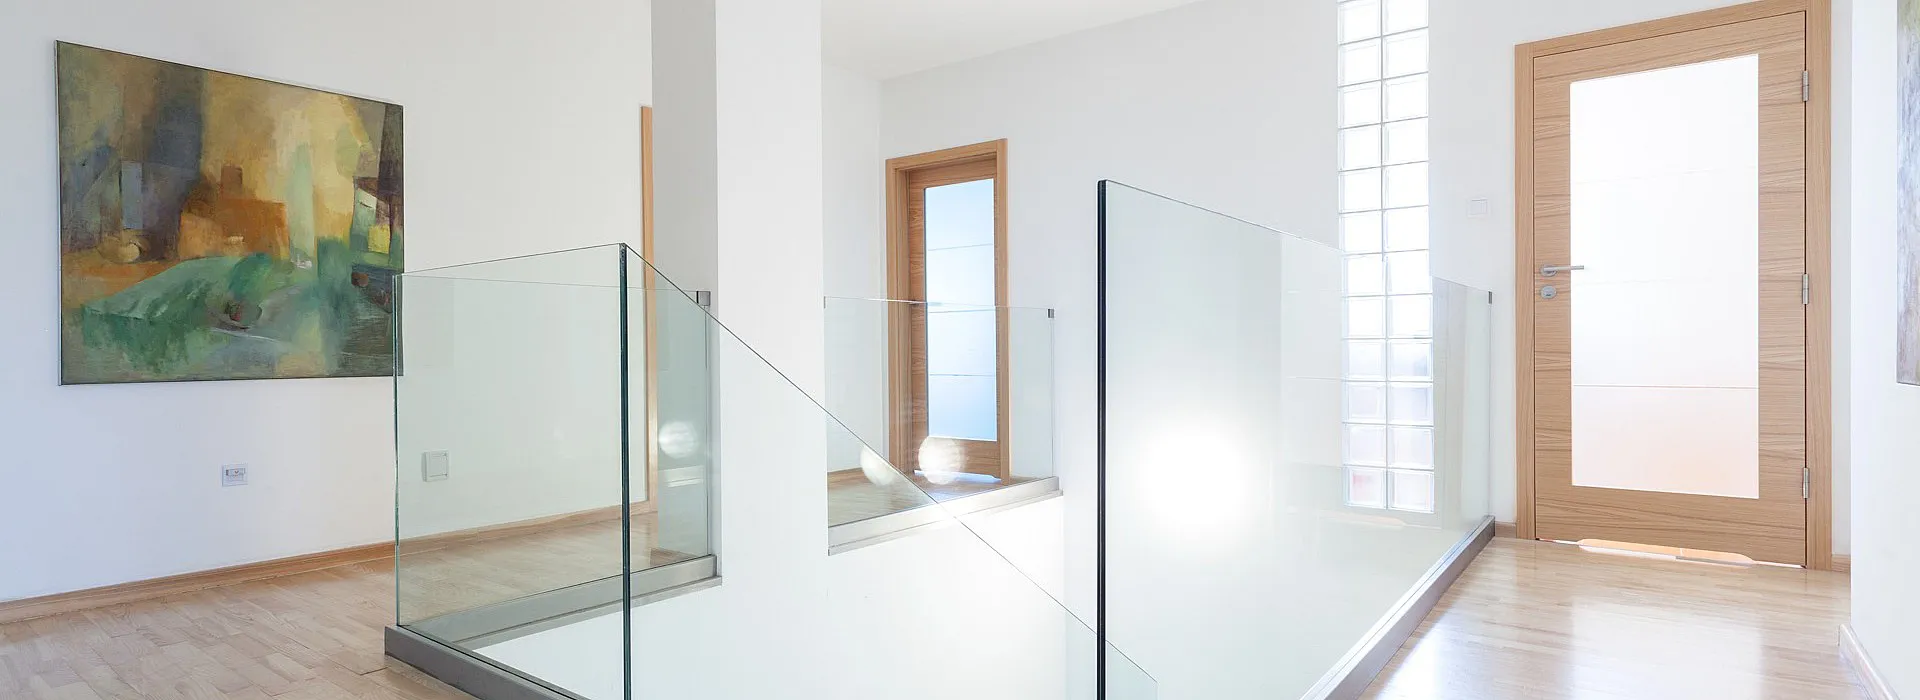 Indoor Glasgeländer, Treppengeländer aus Glas, schlicht, modern